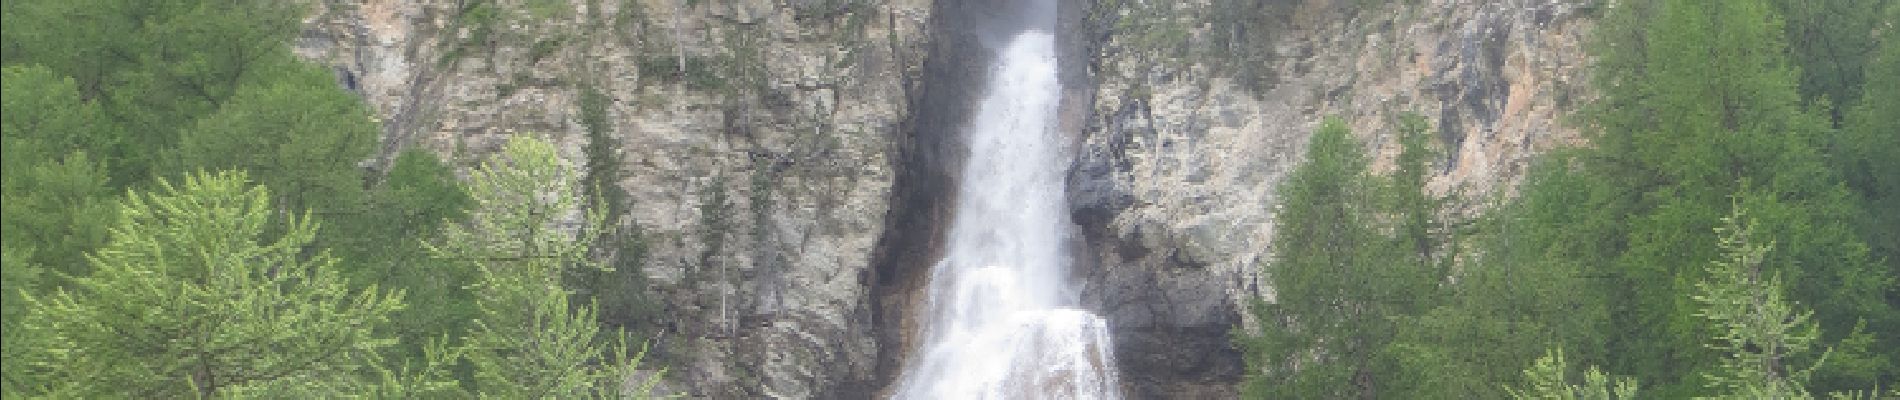 POI Ceillac - cascade de la Pisse - Photo